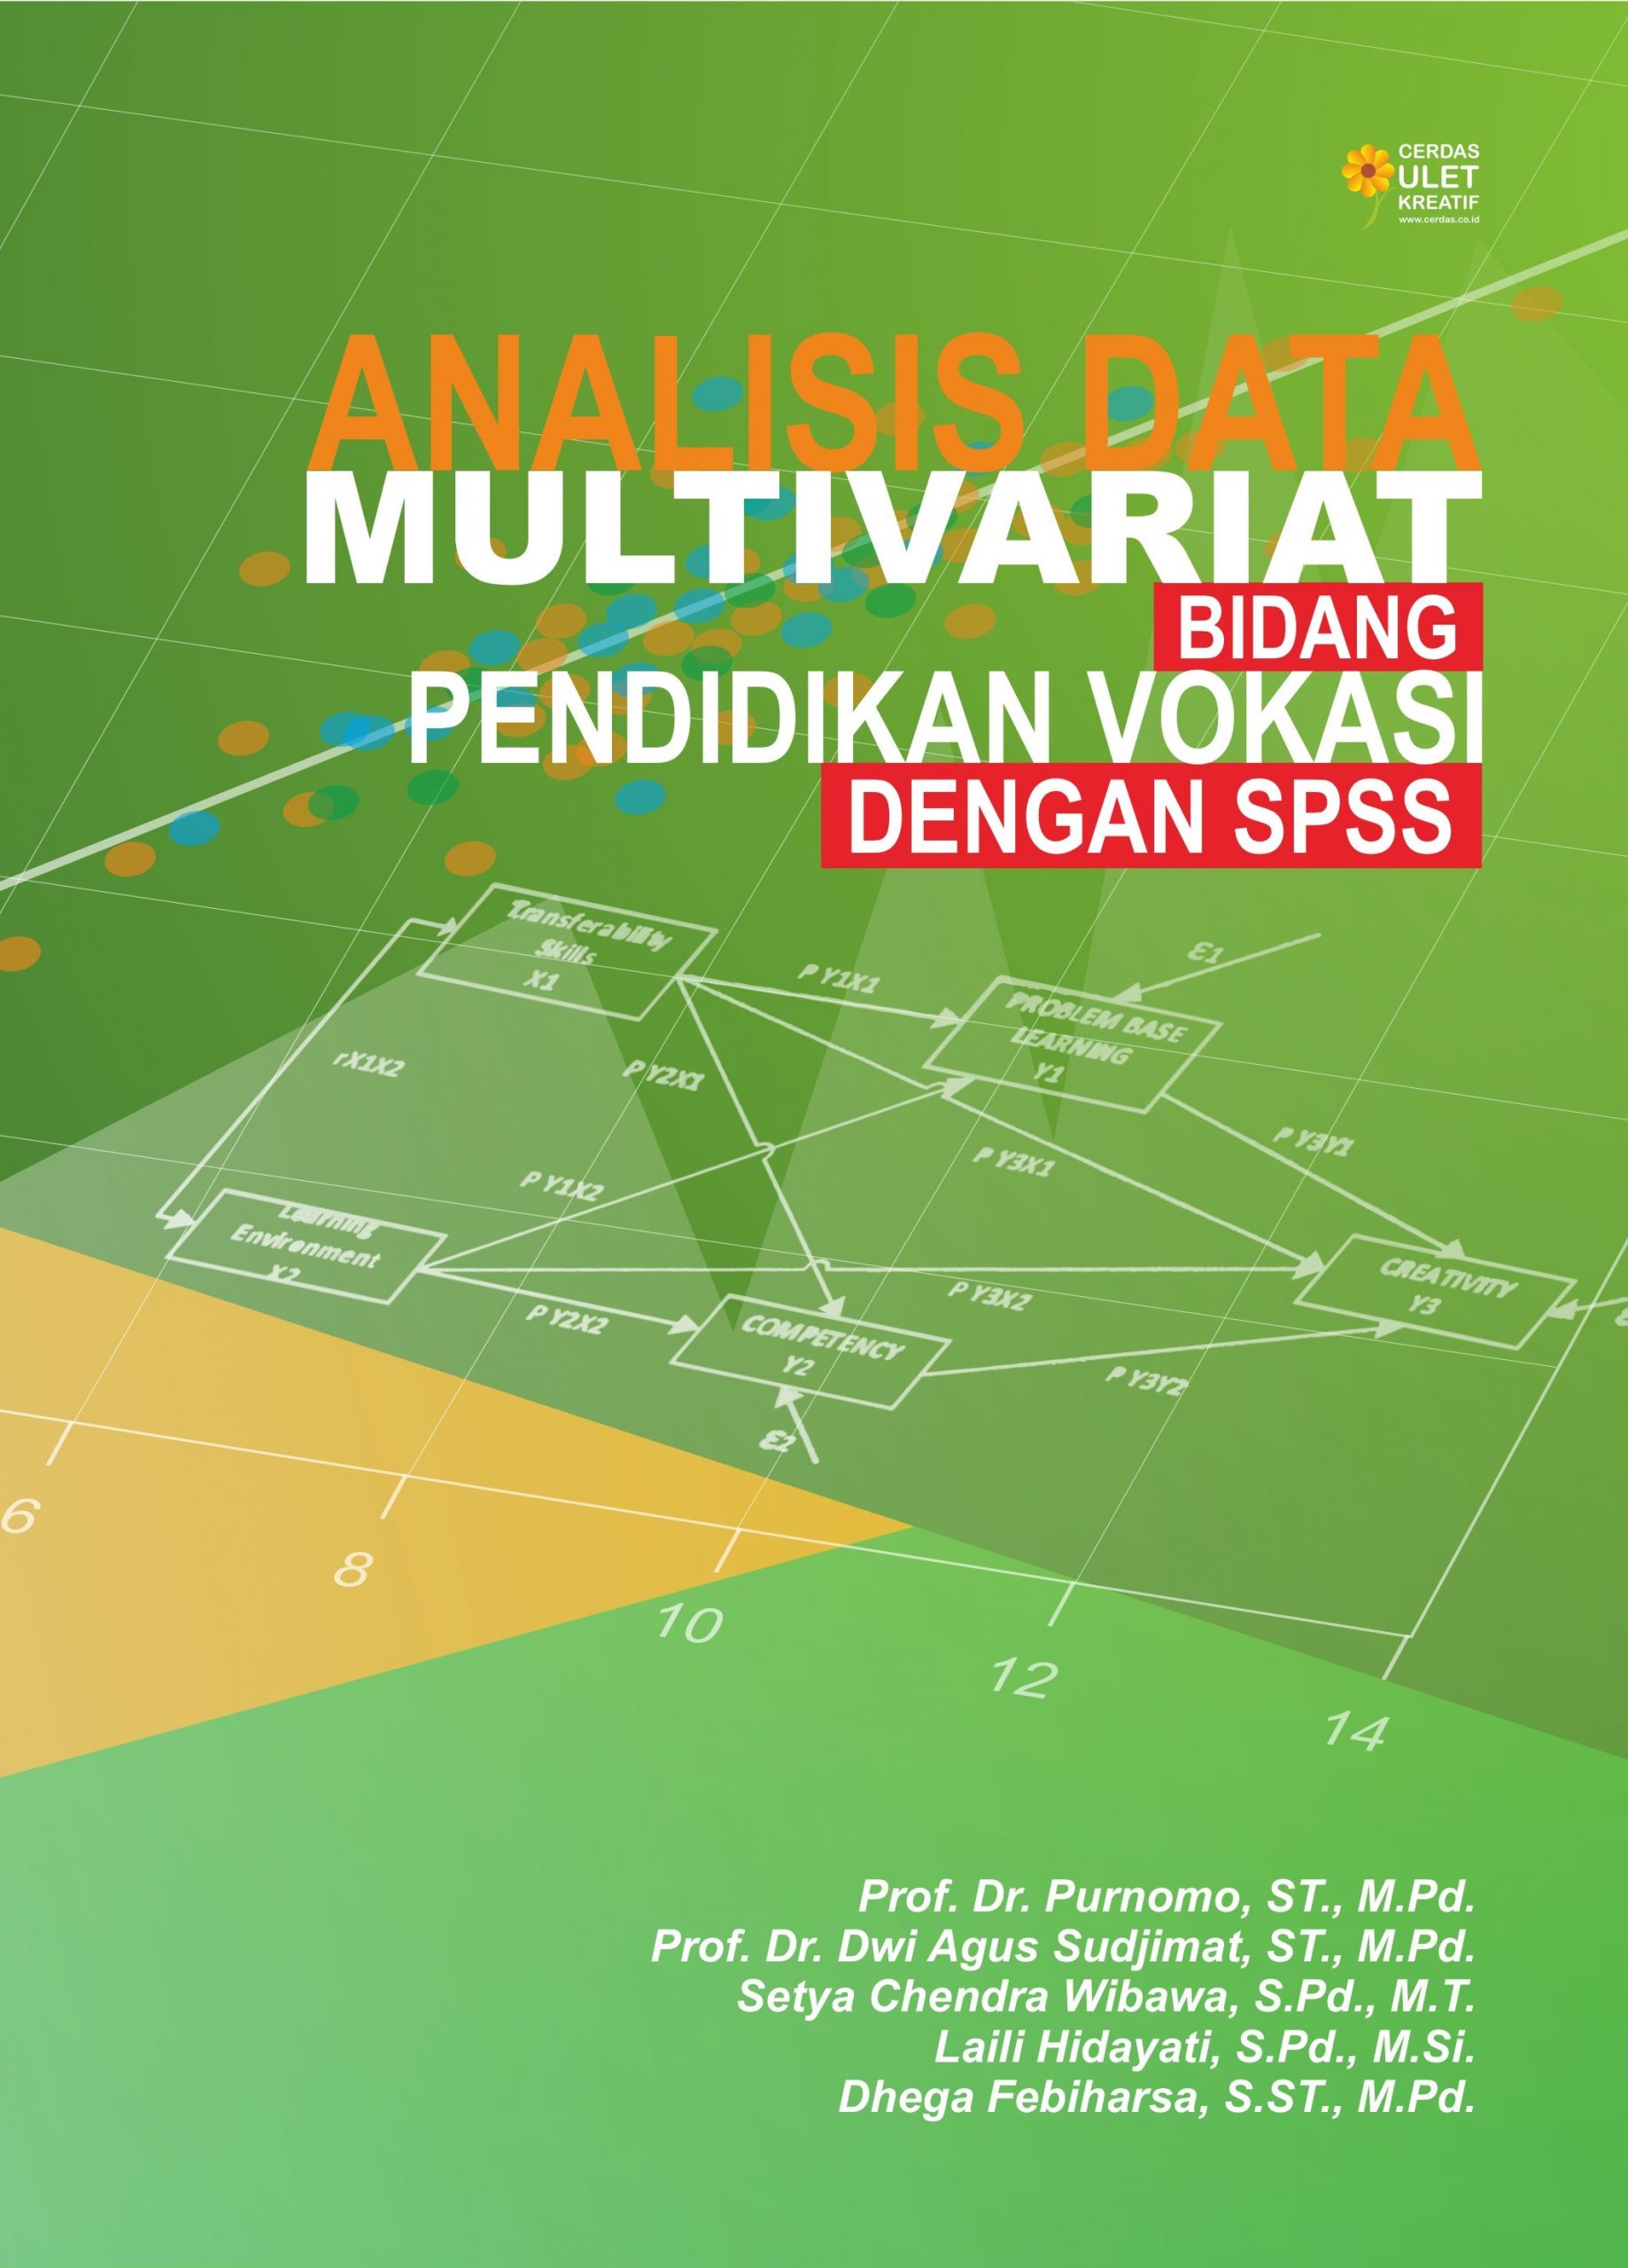 Analisis Data Multivariat Bidang Pendidikan Vokasi dengan SPSS